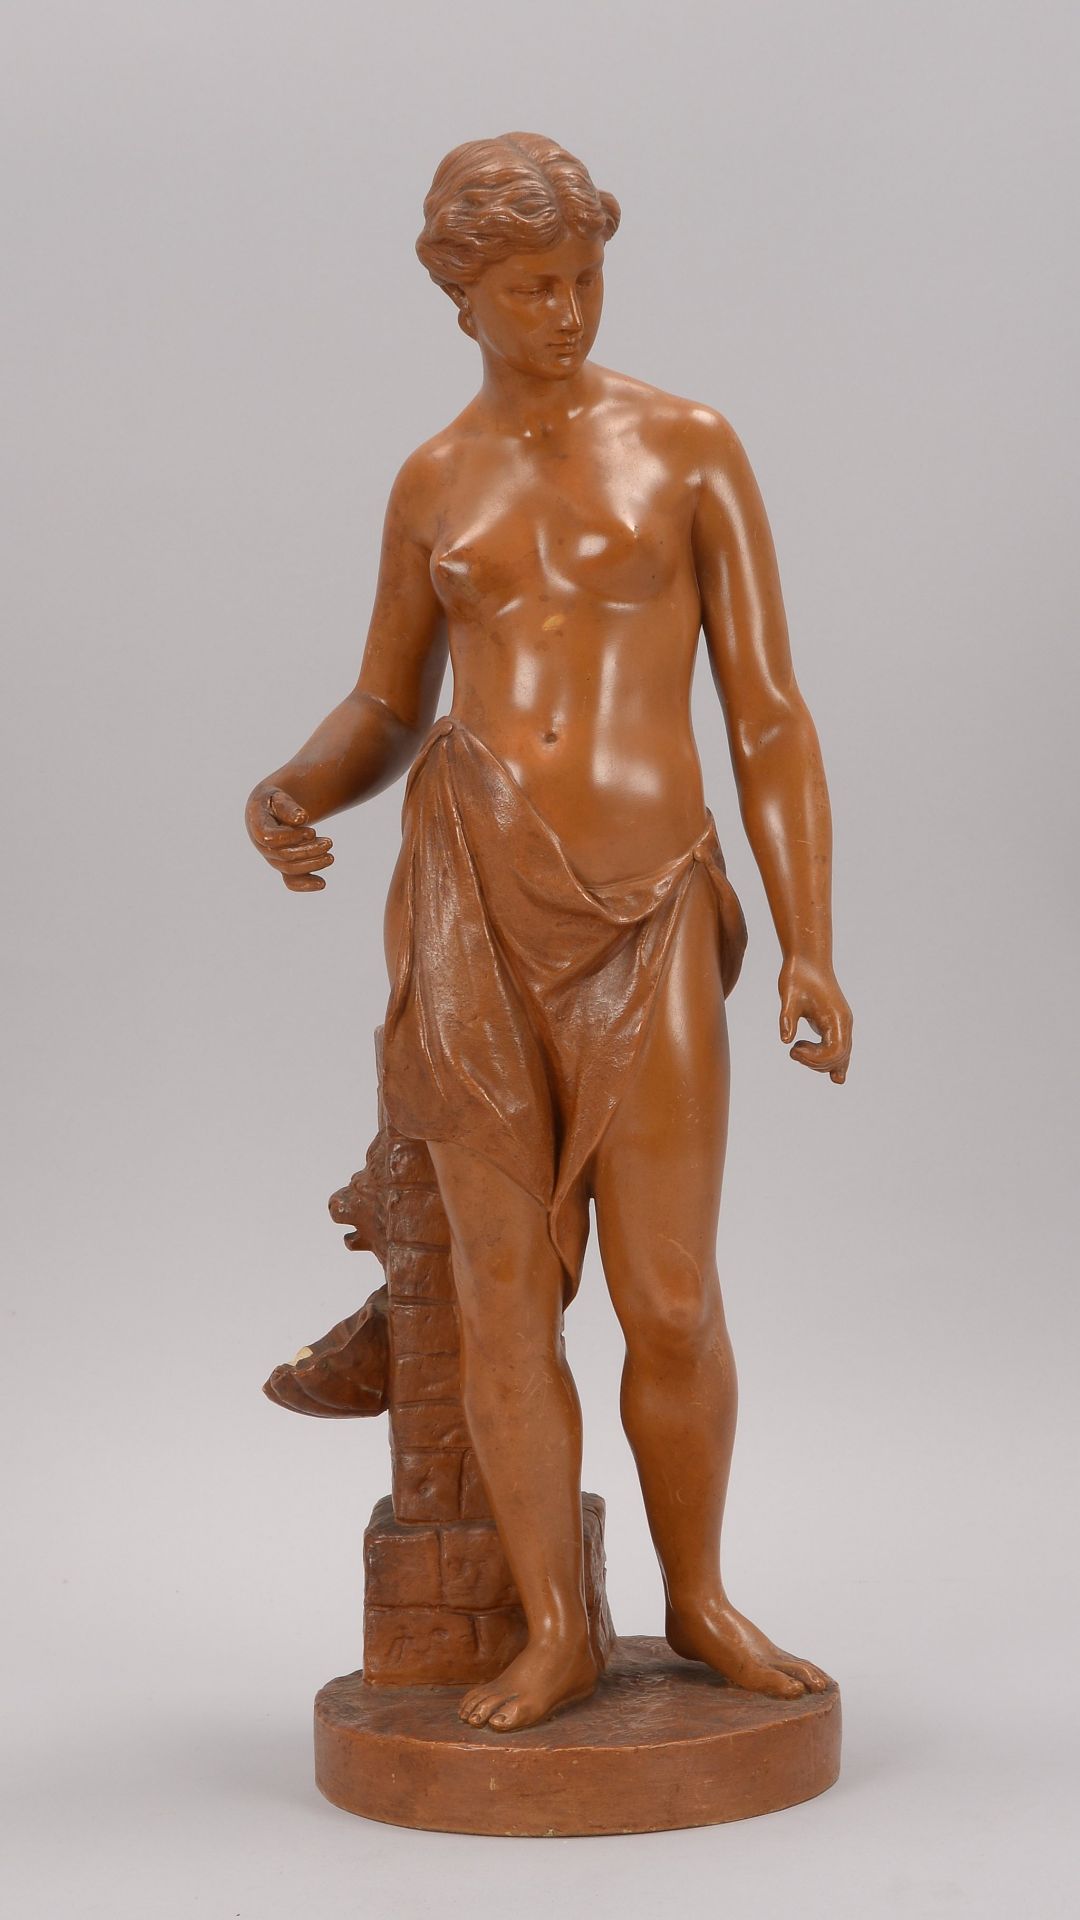 Skulptur, -Frau vor Brunnensaeule- (Reproduktion nach antikem Vorbild), Keramik braun gefasst, im So